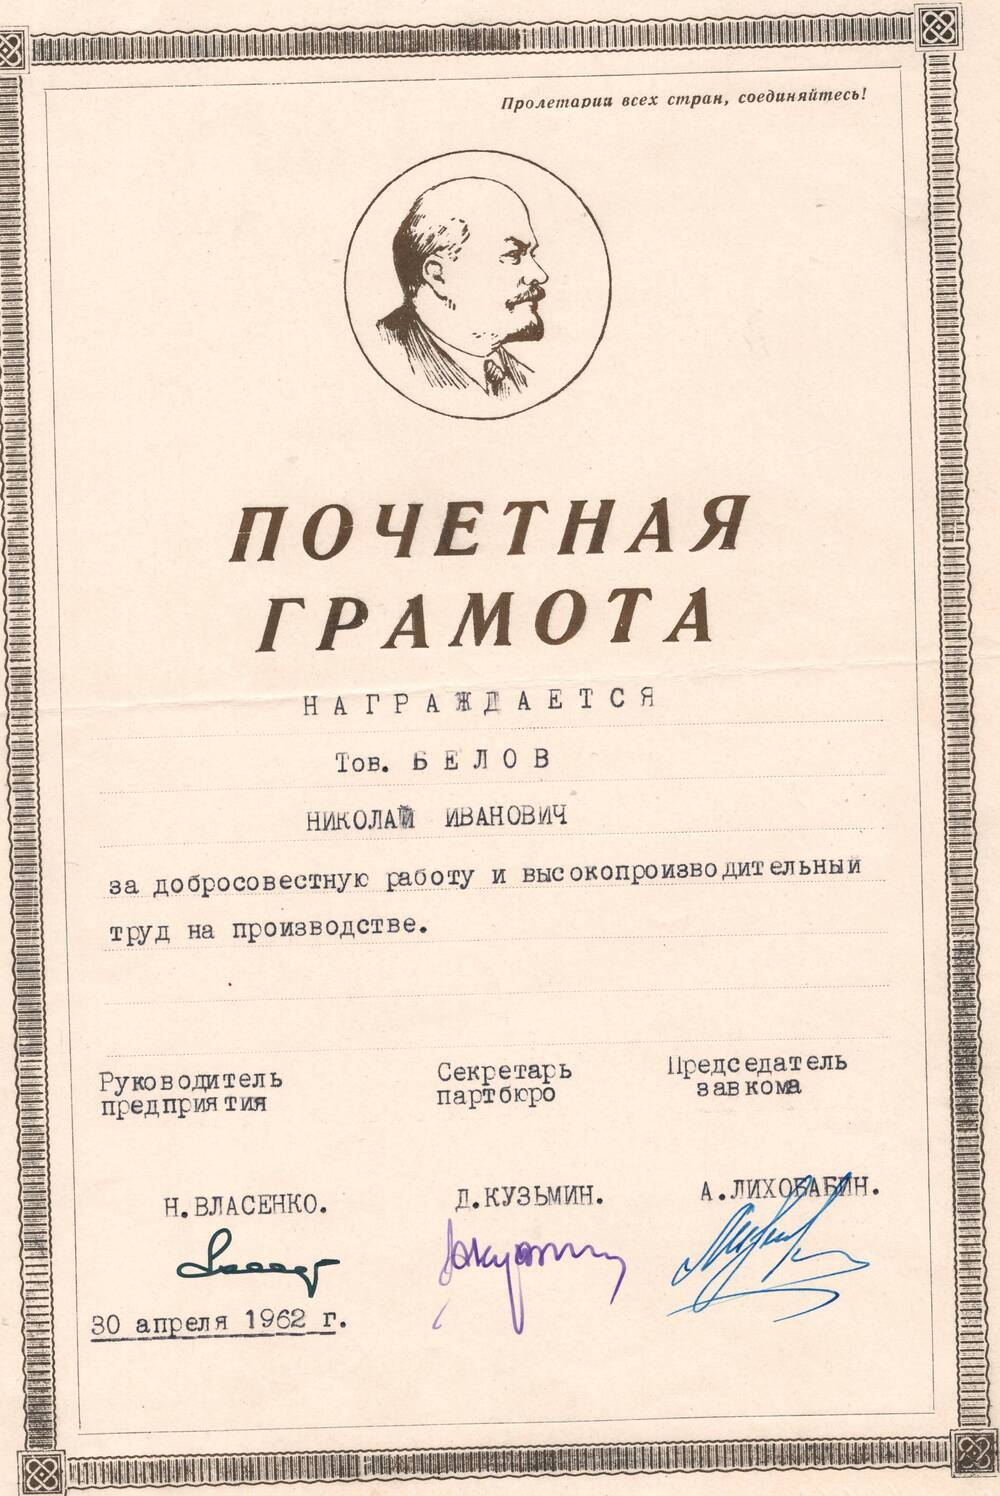 Почетная грамота Белова Н.И., врученная за добросовестную работу и высокопроизводительный труд на производстве